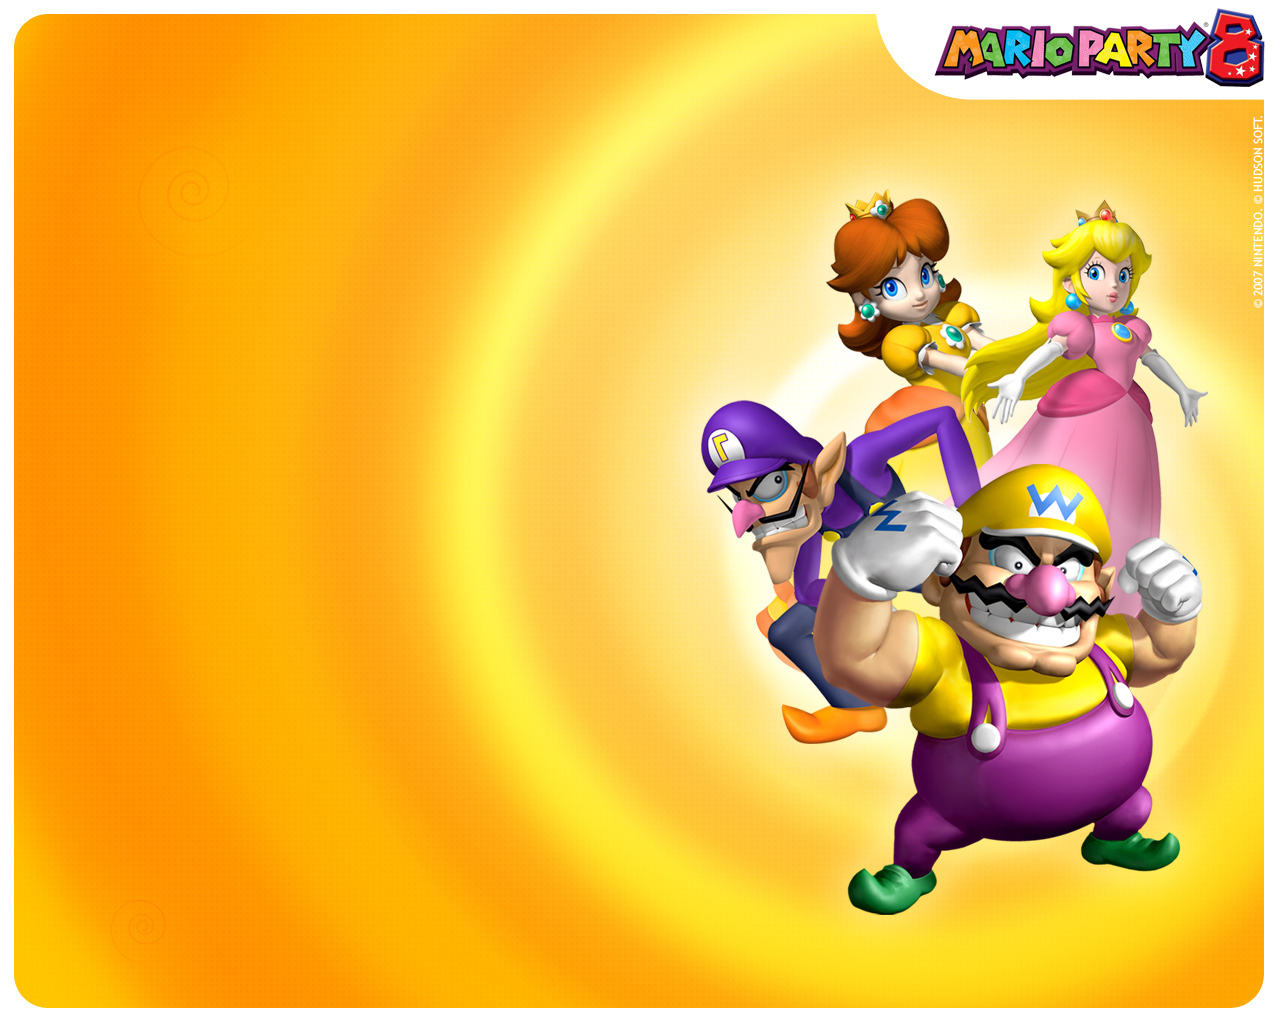 Mario Party 8 - Mario Party Wallpaper (5612851) - Fanpop